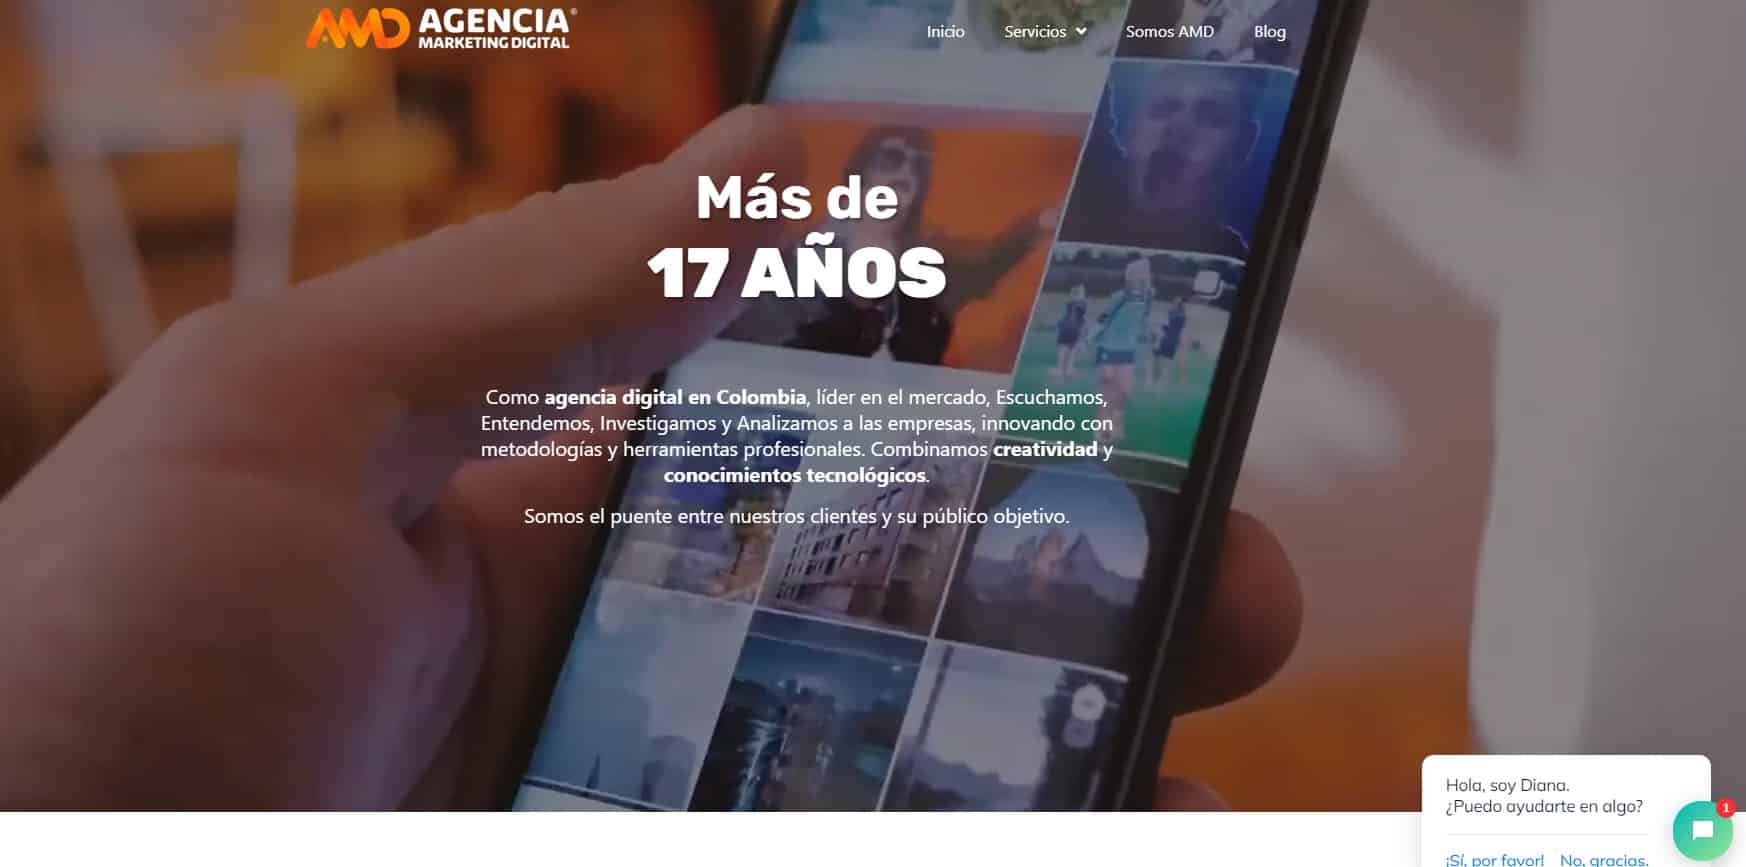 Las 6 mejores Agencias de Marketing Digital en Perú